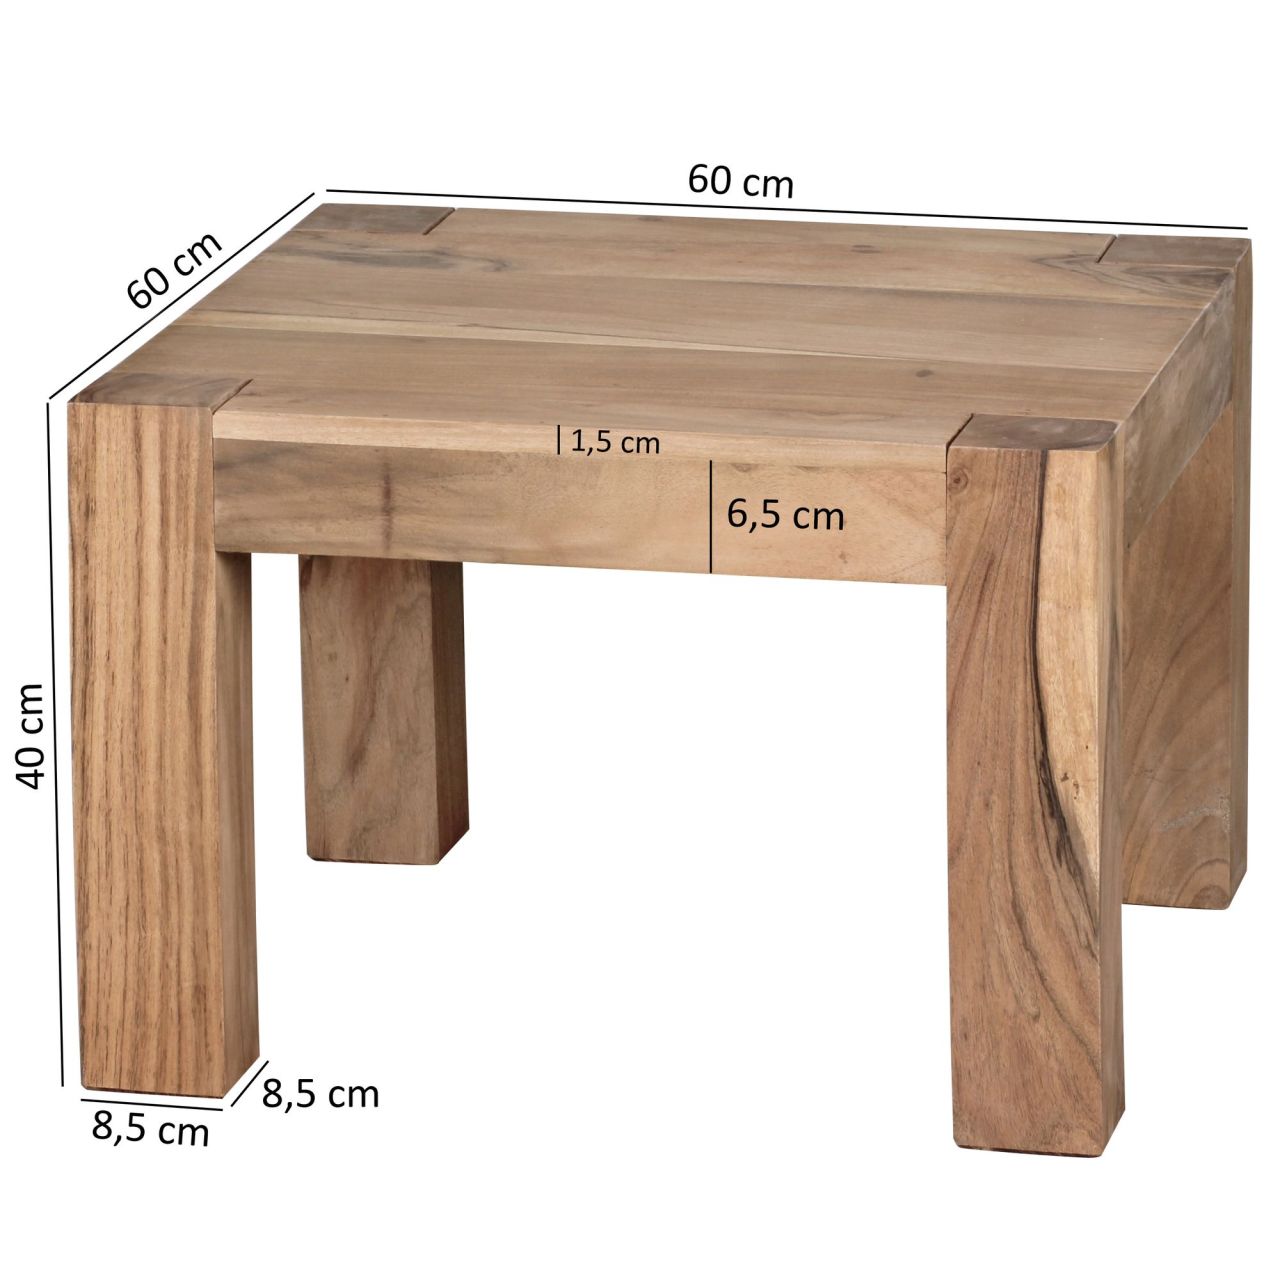 Couchtisch Massiv-Holz Akazie 60 cm breit Wohnzimmer-Tisch Design braun Landhaus-Stil Beistelltisch natur